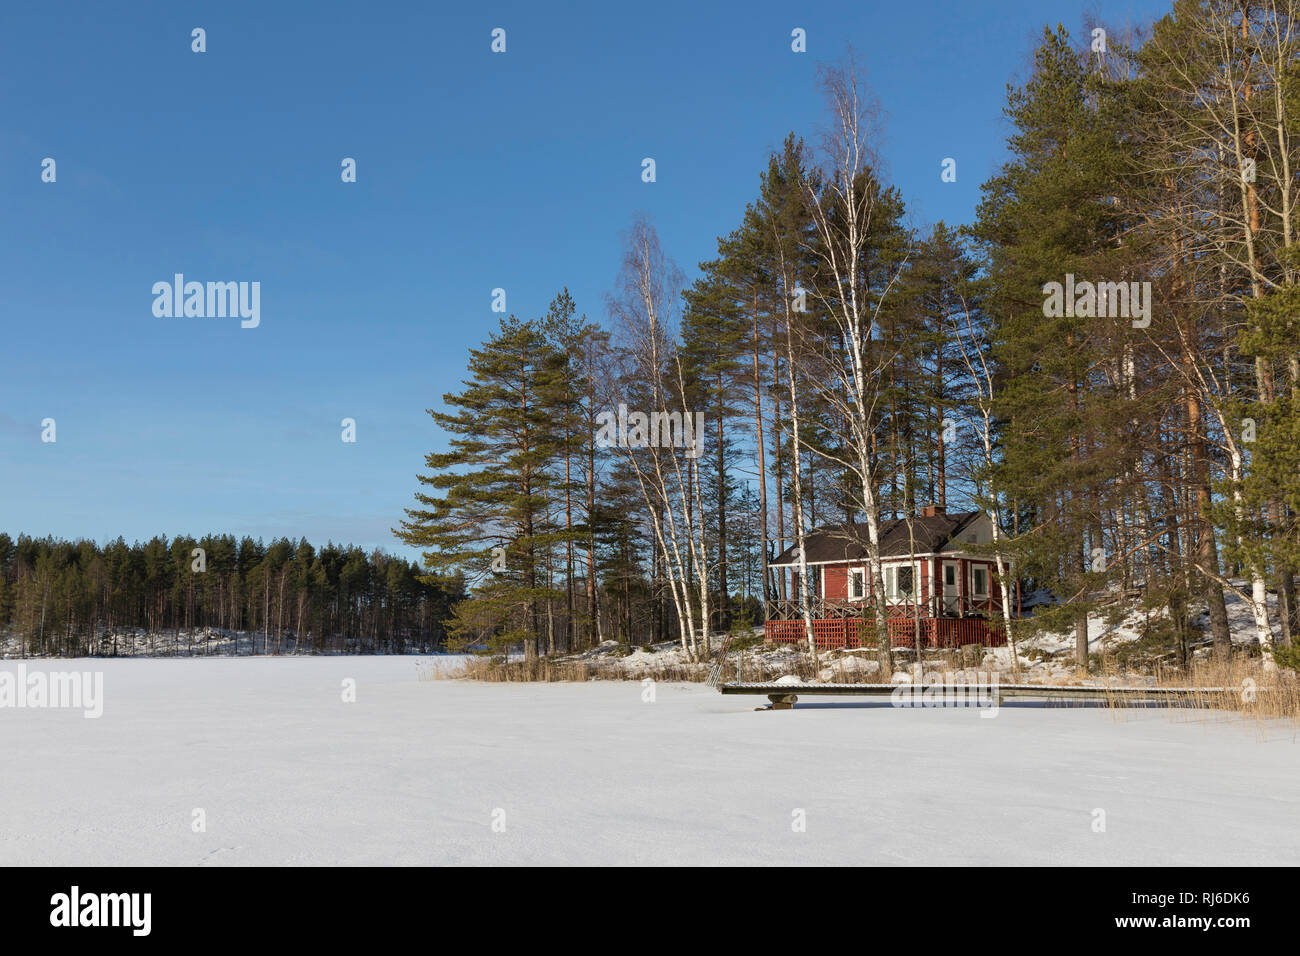 Finnland, Saimaa-Gebiet, Ferienhaus auf Insel im Winter Stock Photo